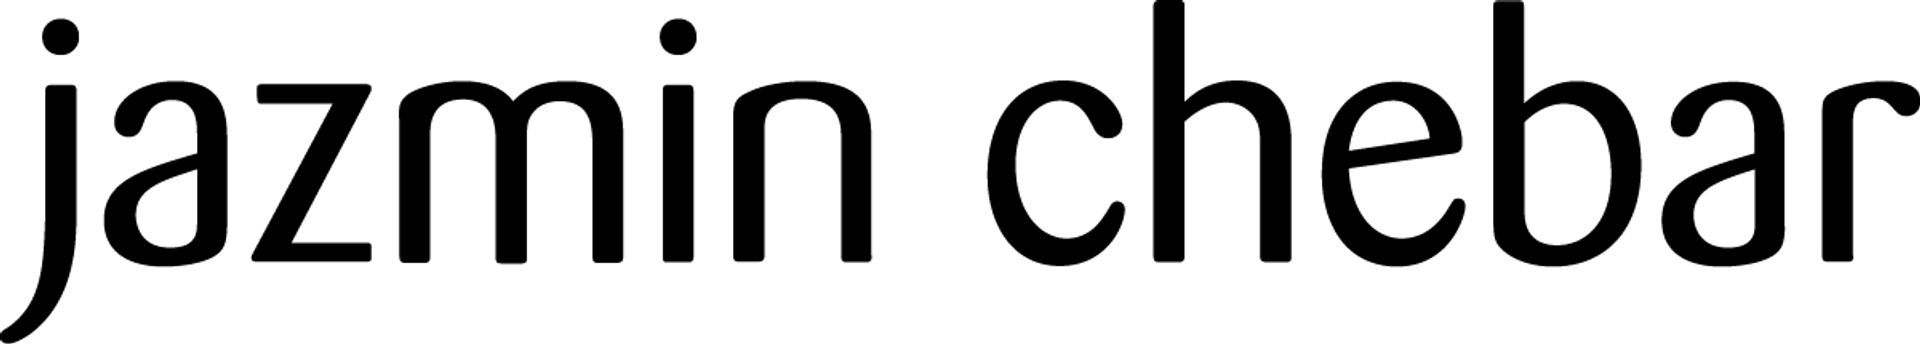 JAZMIN CHEBAR logo